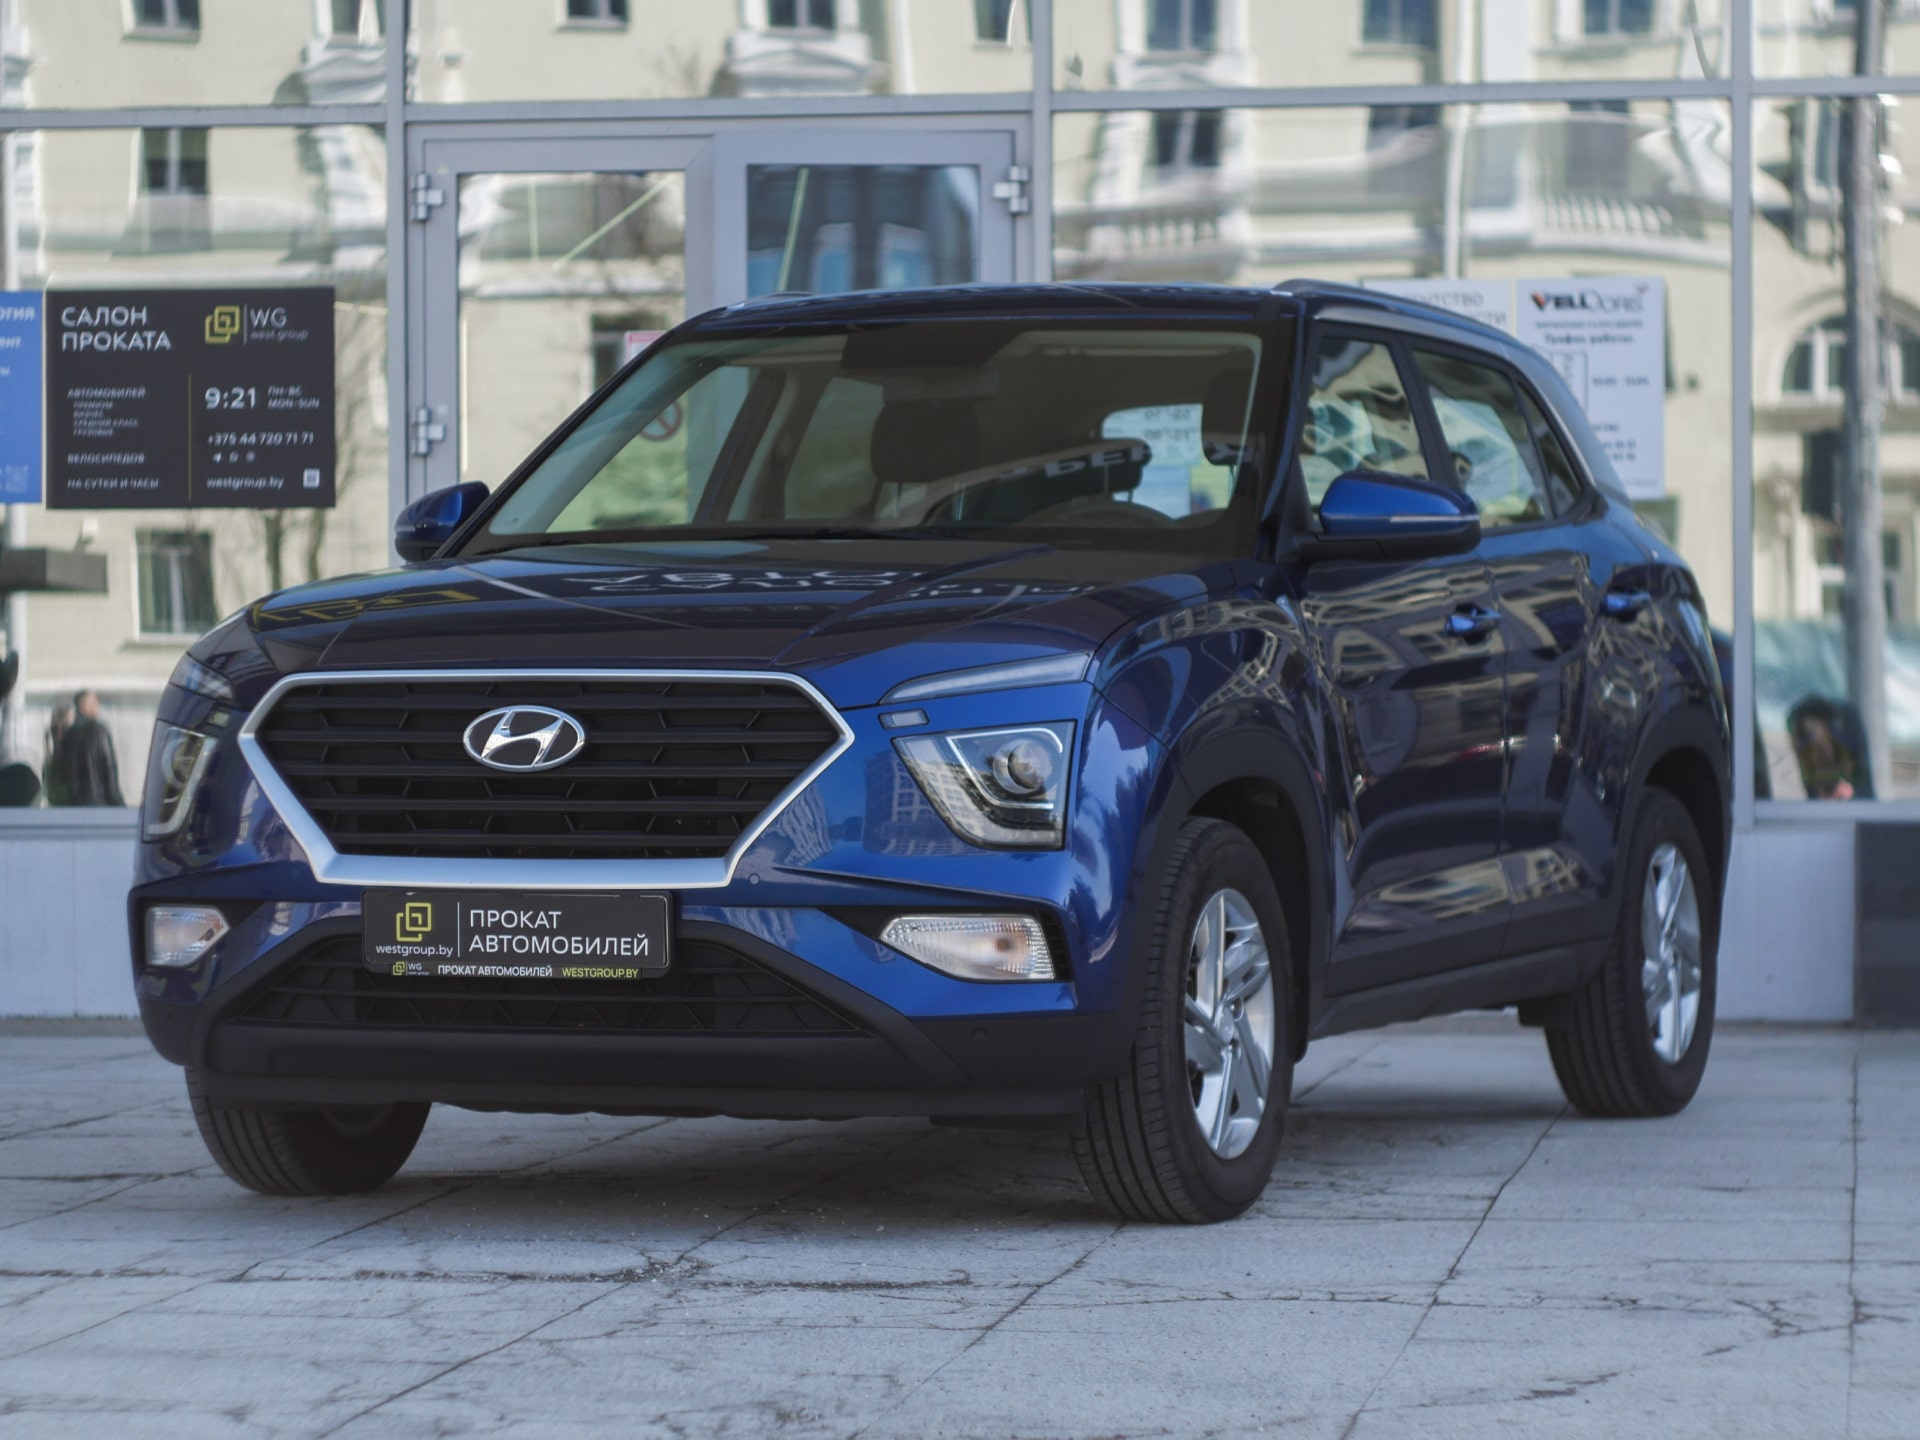 Аренда  Hyundai Creta New 2WD  6 класса 2022 года в городе Минск от 59 $/сутки,  двигатель: Бензин , объем 1.6 AT литров, КАСКО (Мультидрайв), без водителя, вид 1 - West Group